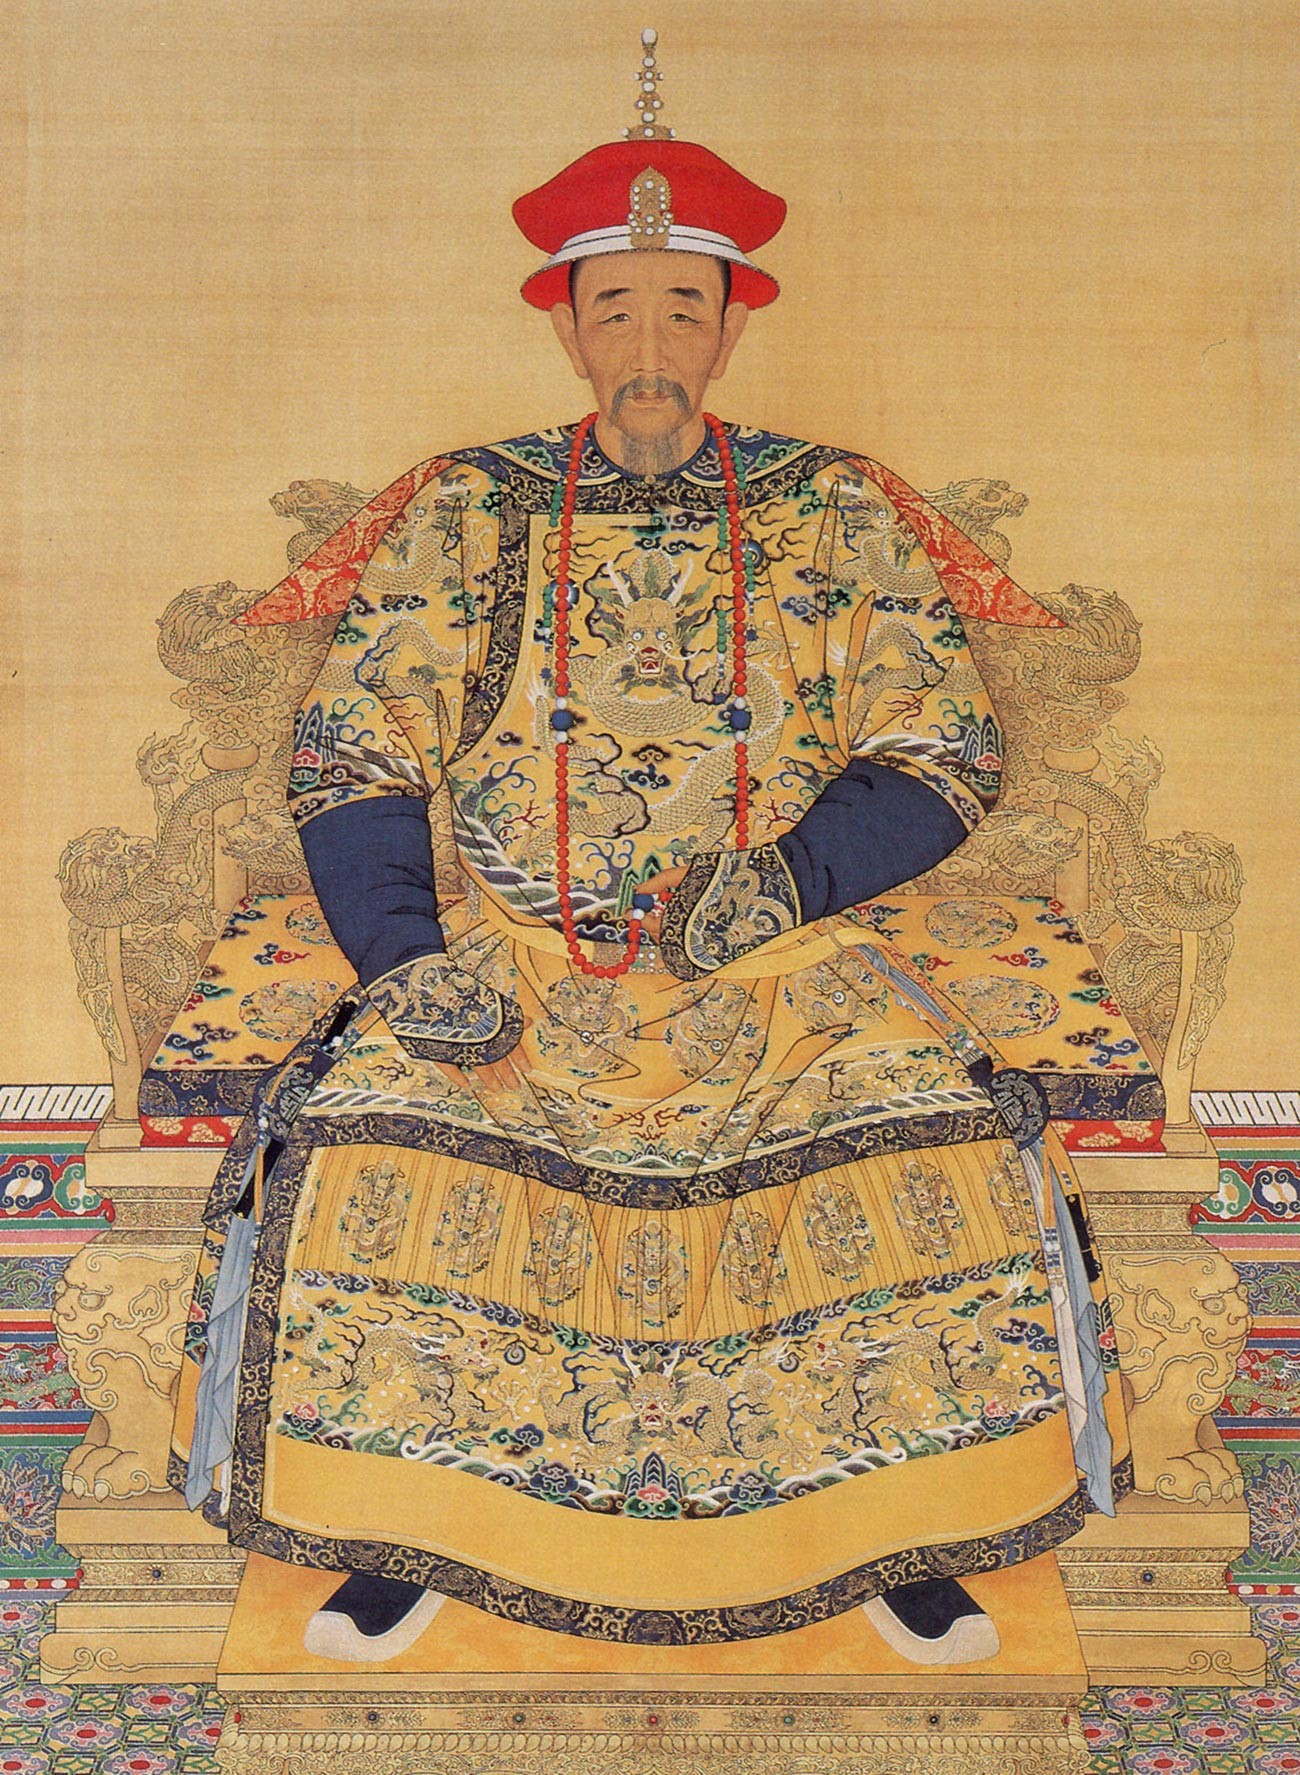 Айсингьоро Сюанье, манджурски император от династията Цин (от 7 февруари 1661 г., ера Канси от 18 февруари 1662 г. до 4 февруари 1723 г., виж китайския календар). Четвъртият представител на Манджурската династия, управлявала цял Китай, който е бил част от империята Цин